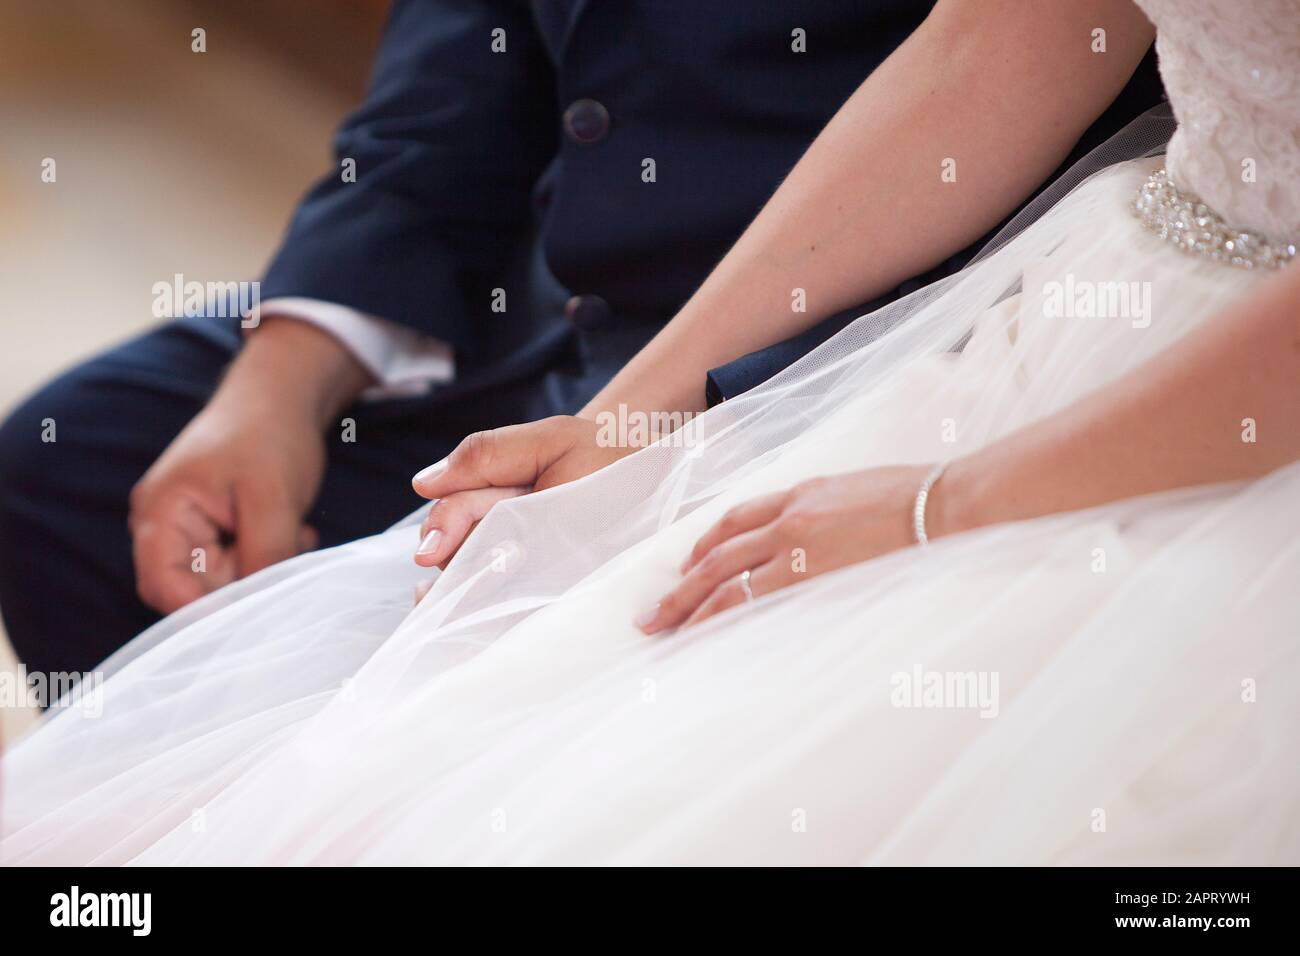 Brautpaar bei der Heirat halten sich gegenseitig, Nahaufnahme der Hände Stockfoto